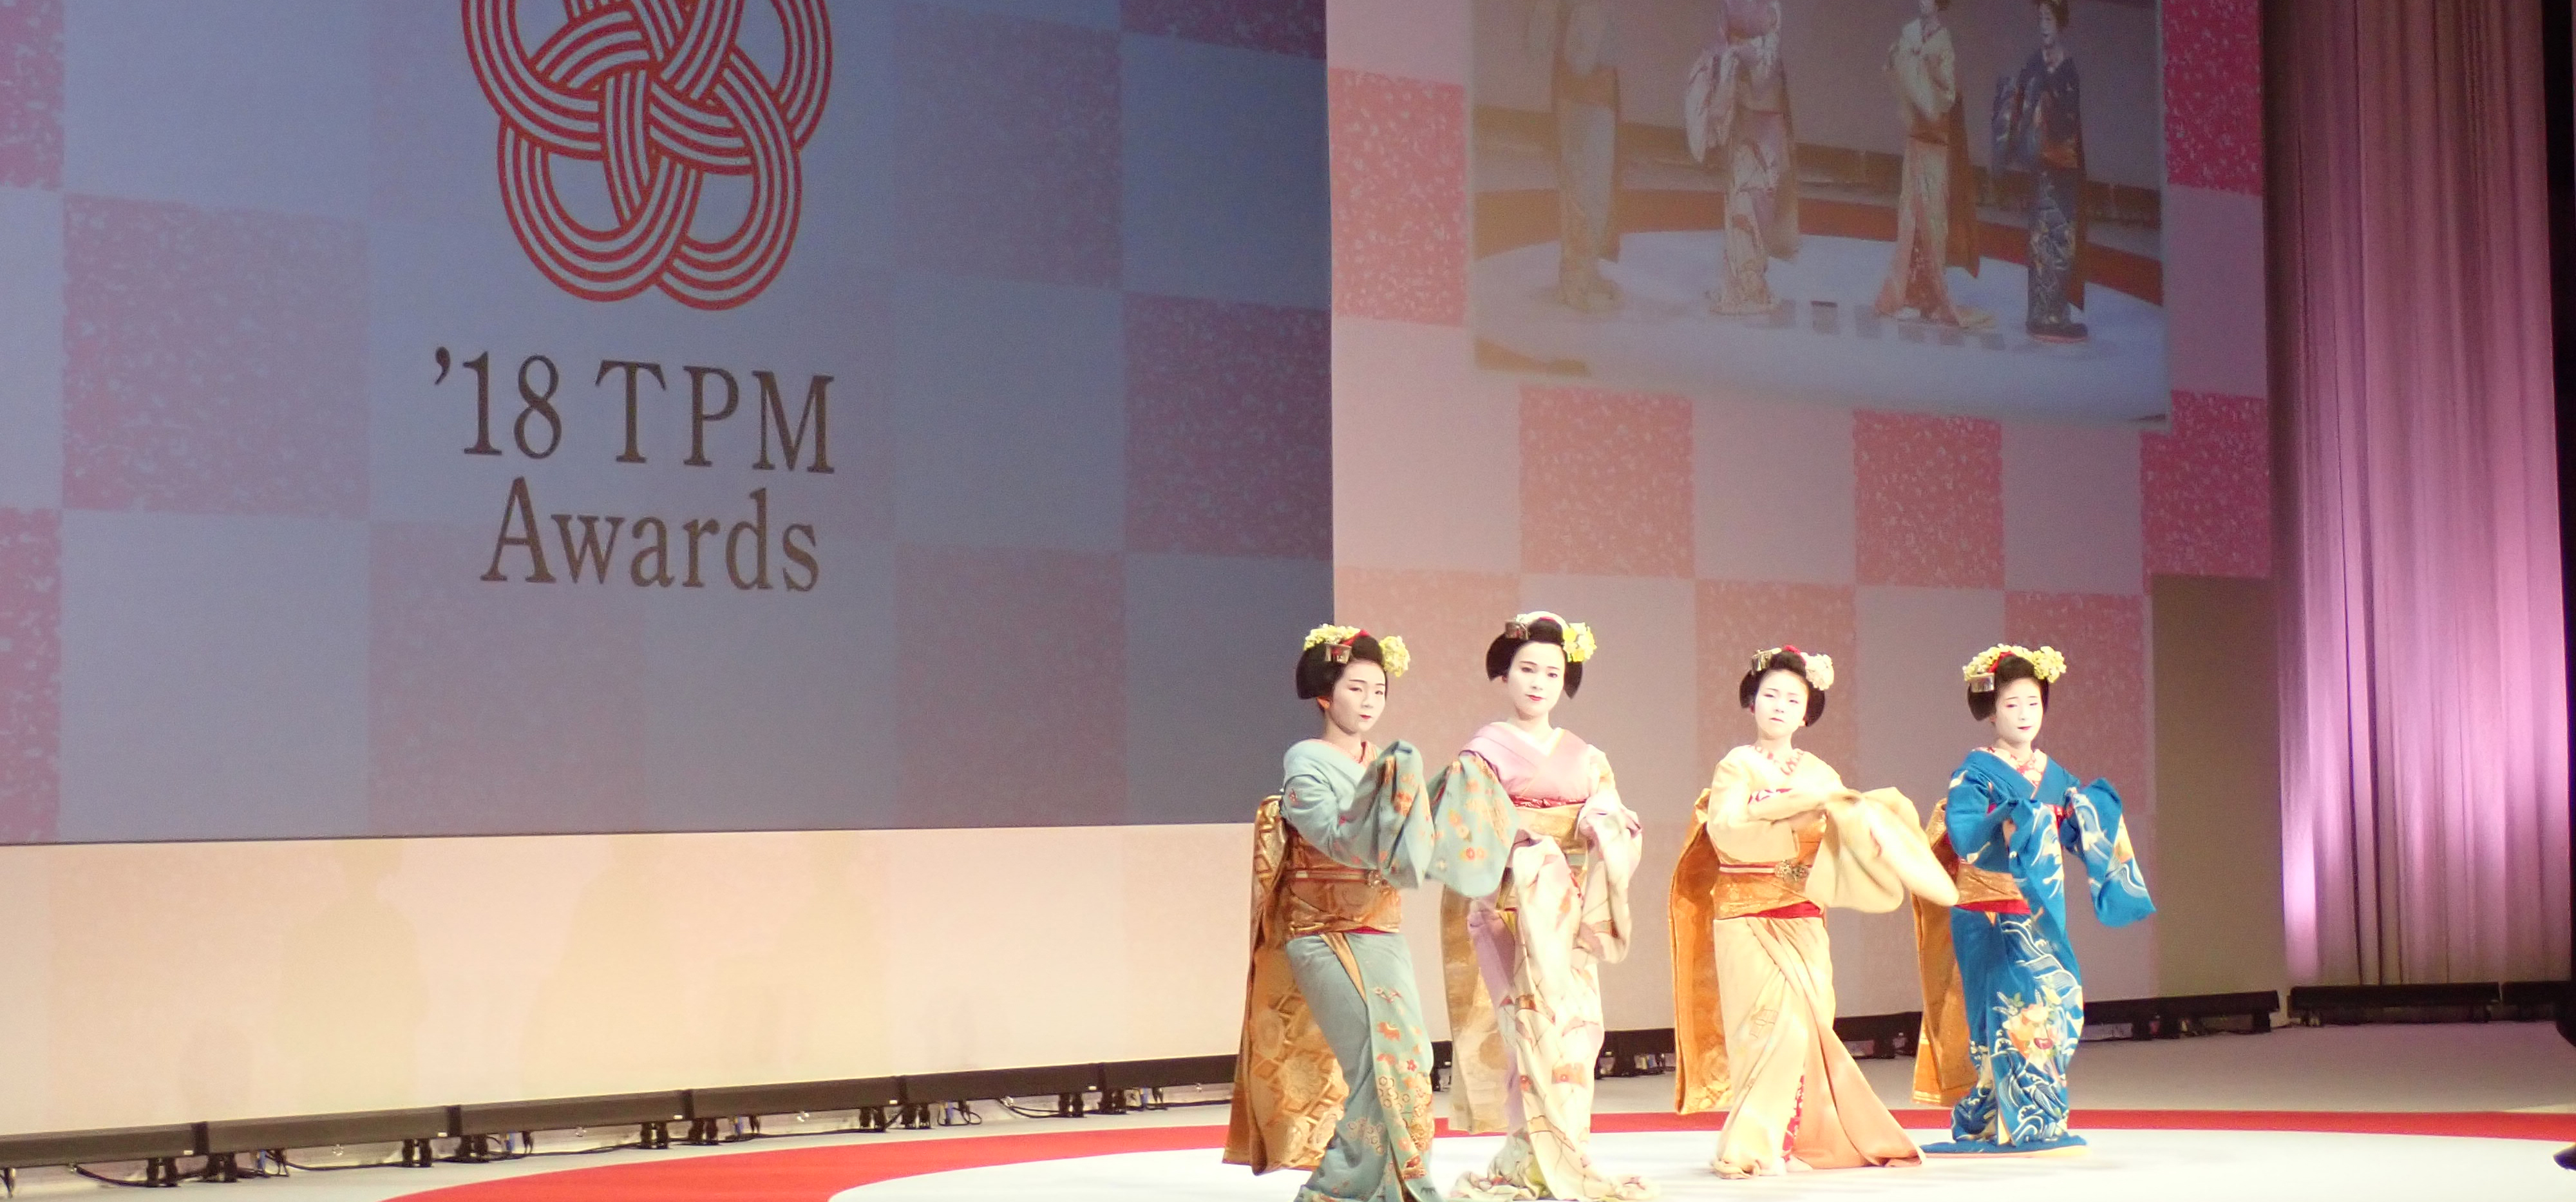 Award Ceremony:<br>2018 TPM Awards